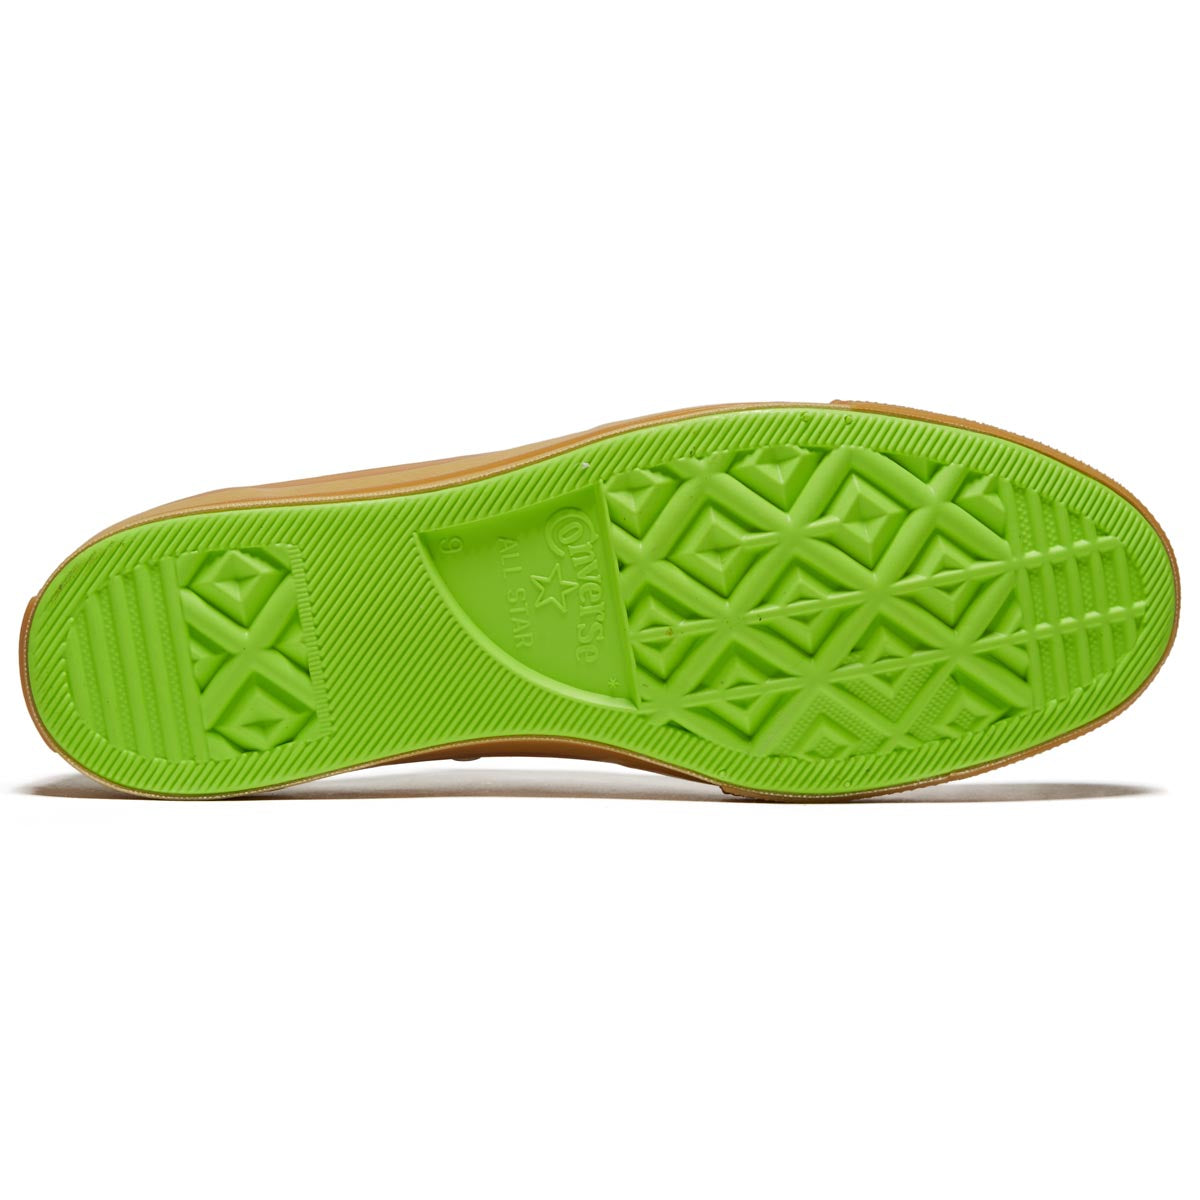 Converse Chuck 70 Ox Shoes - Egret/Gum/Watermelon Slushy image 4